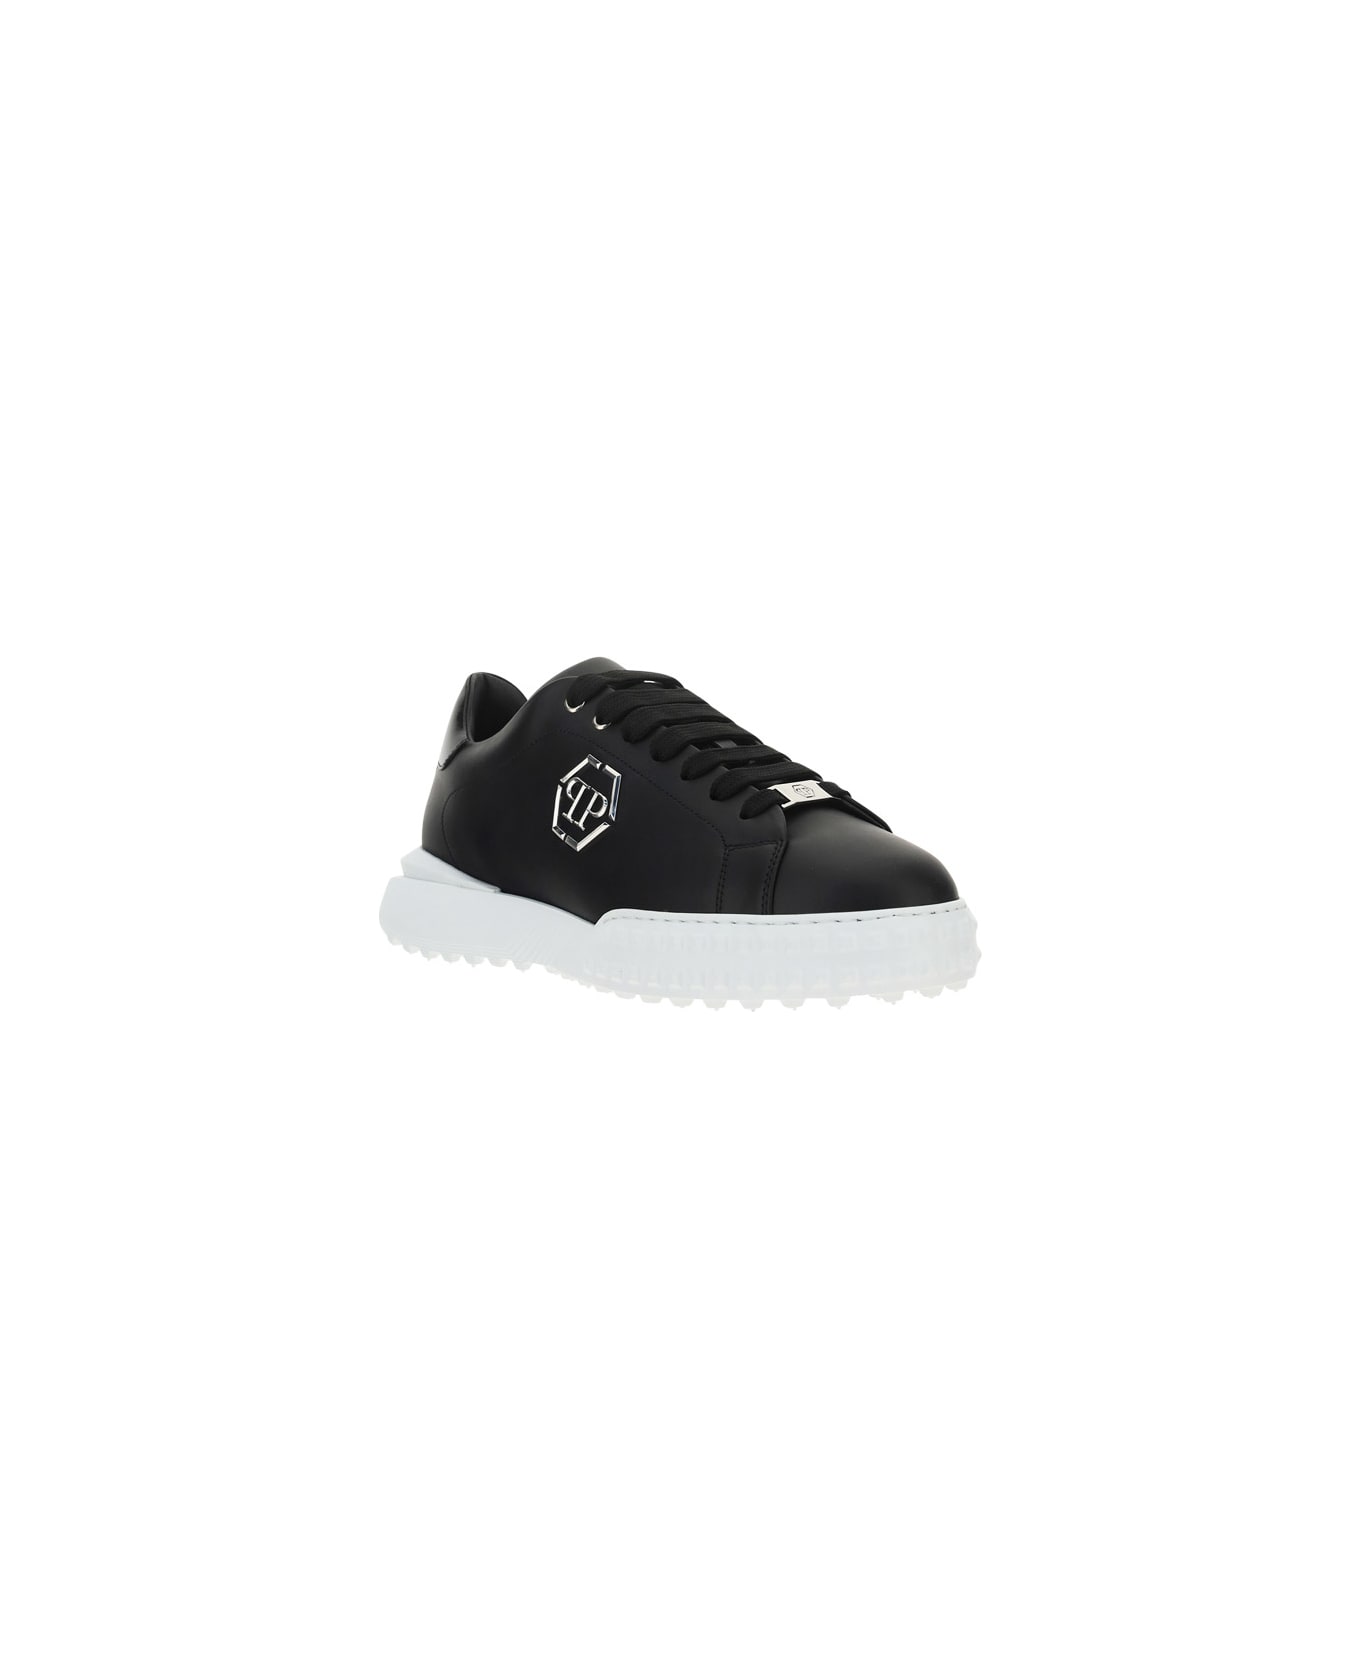 Philipp Plein Sneakers - Black/white